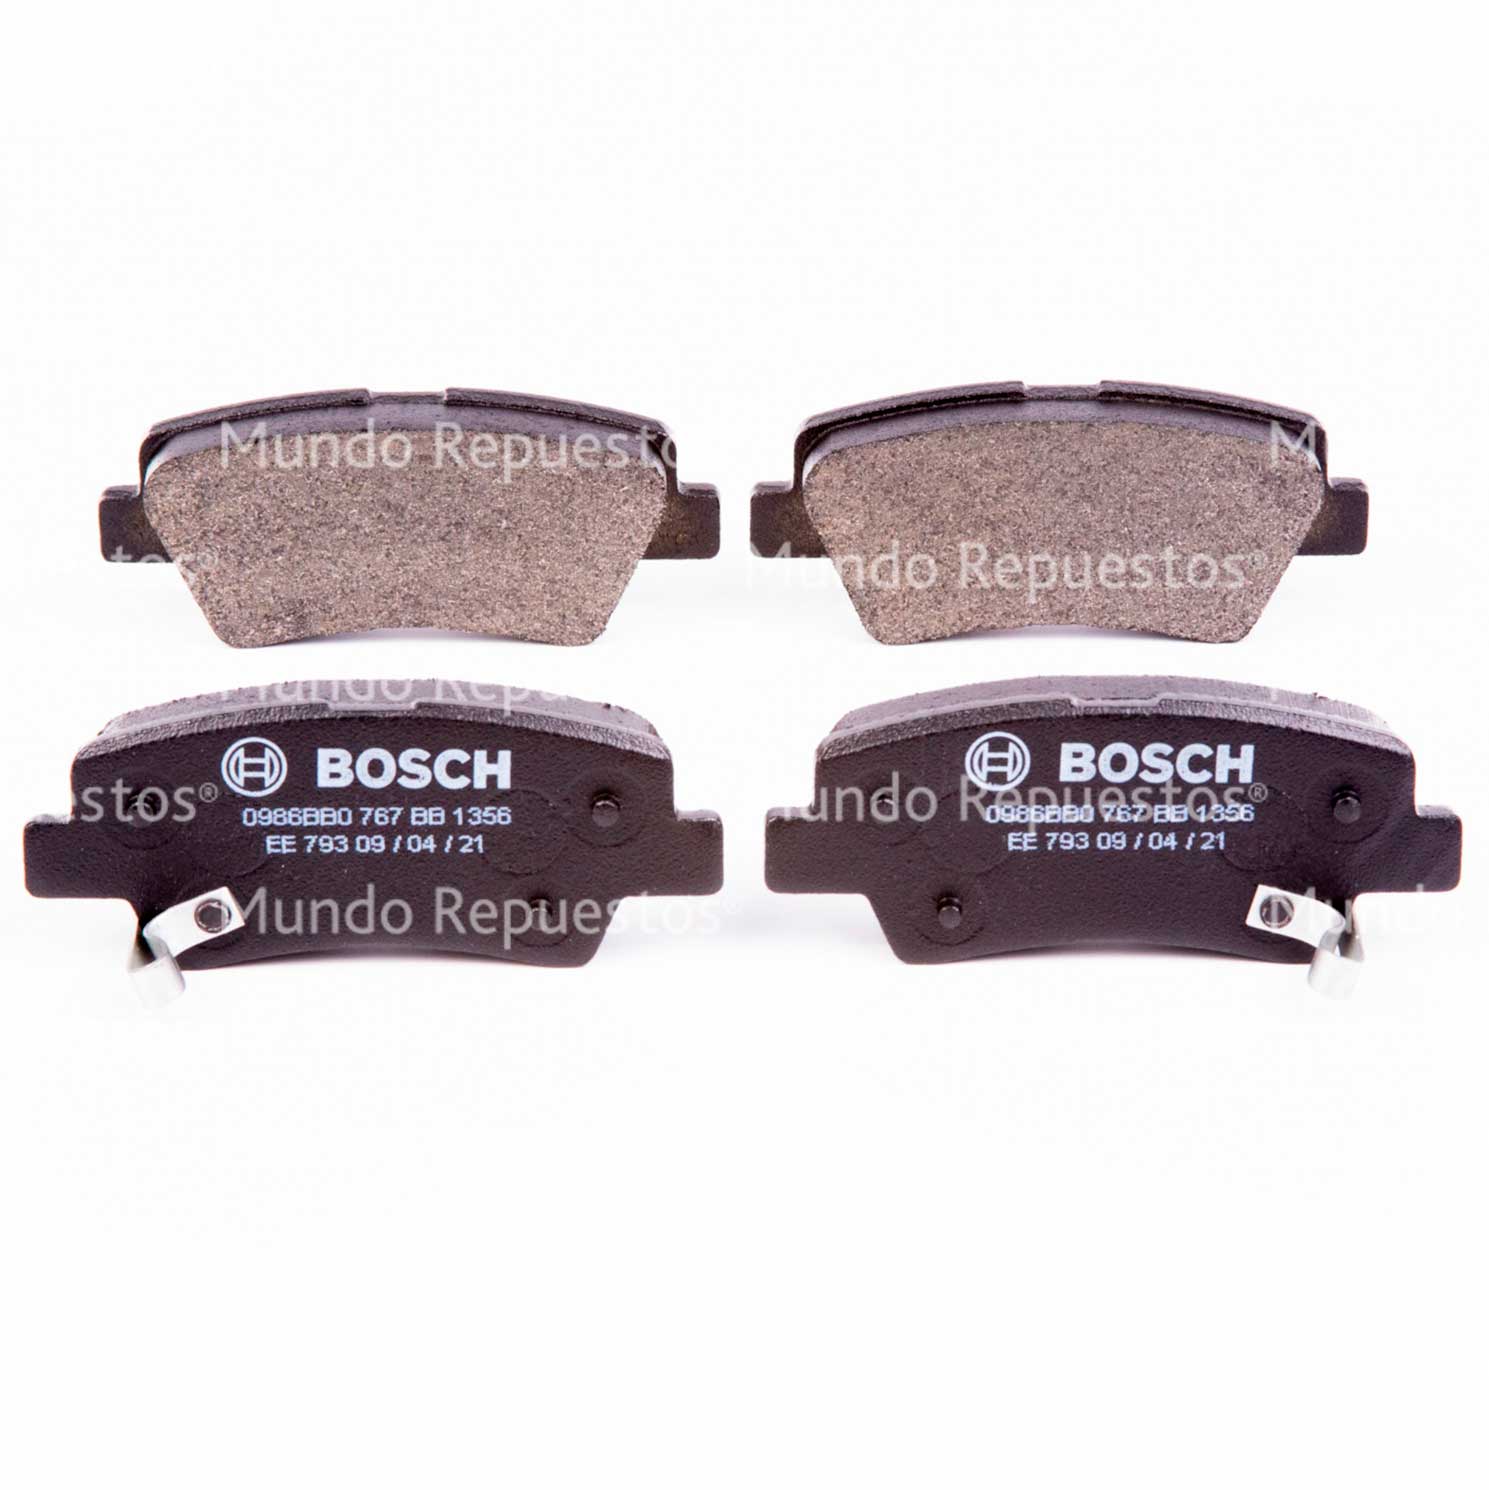 Juego pastillas freno marca Bosch disponible en Mundo Repuestos